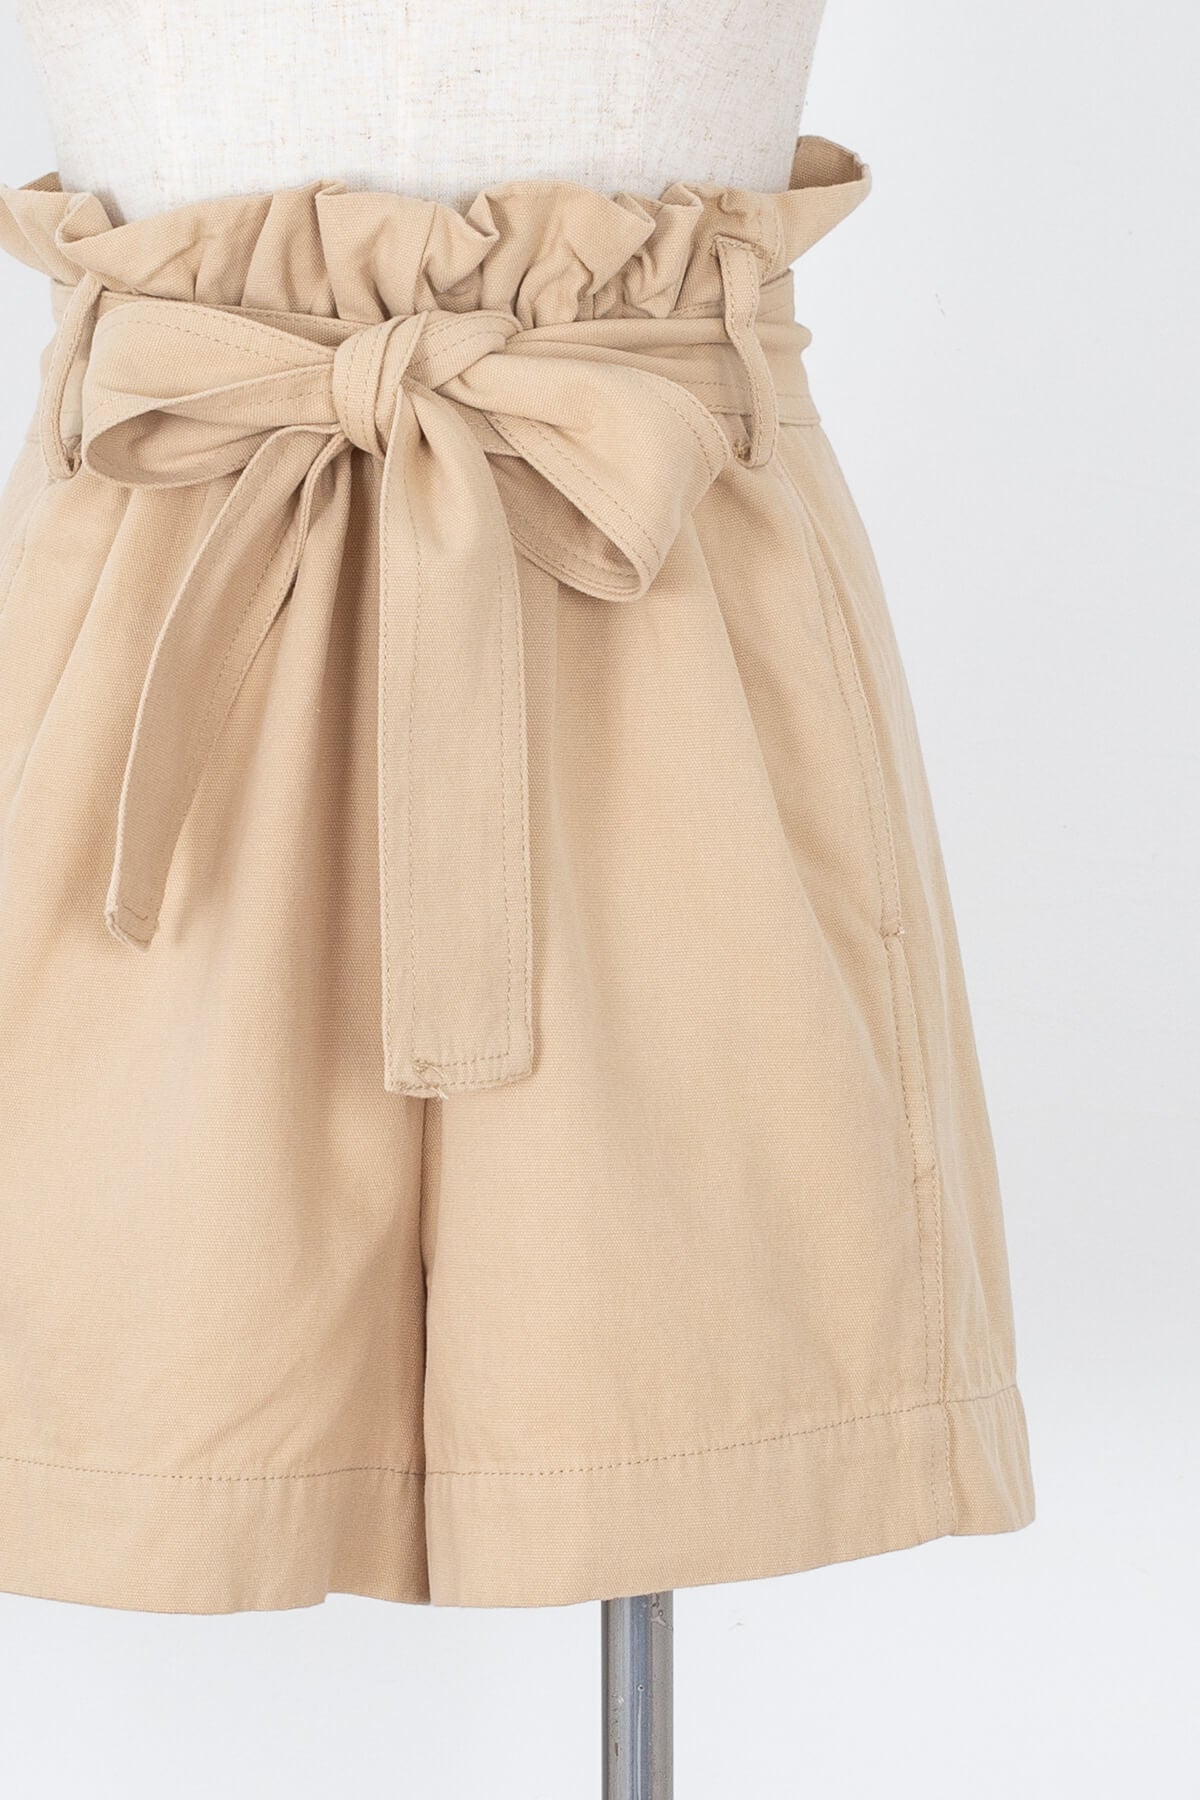 Women's light brown paper bag summer shorts | Kariella